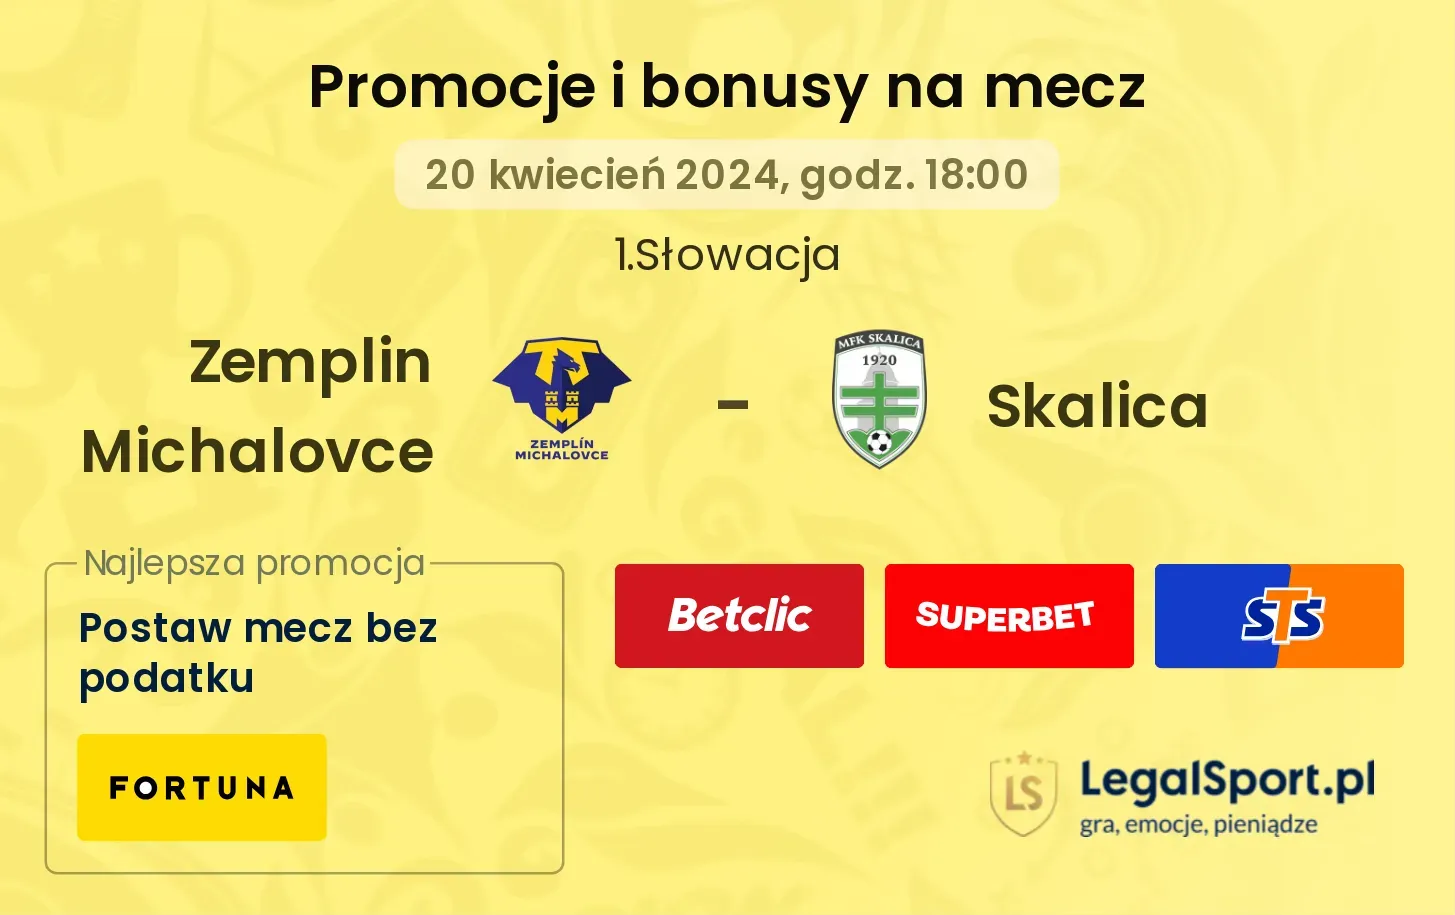 Zemplin Michalovce - Skalica promocje bonusy na mecz